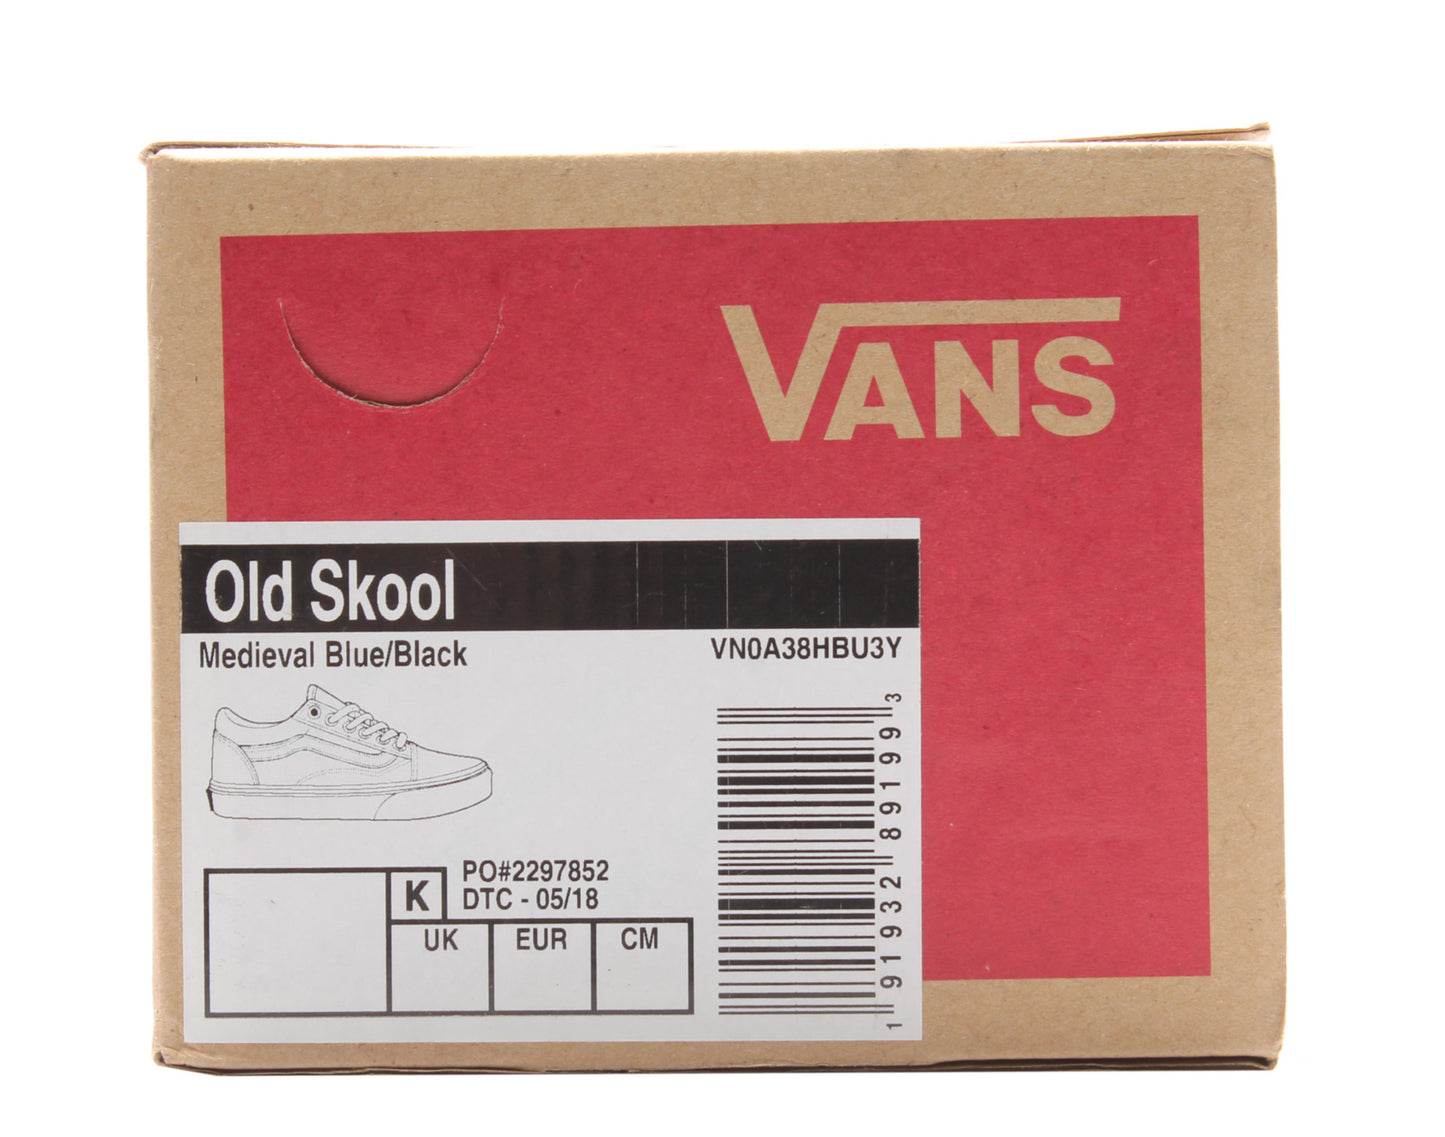 Vans Old Skool Low Top Sneakers